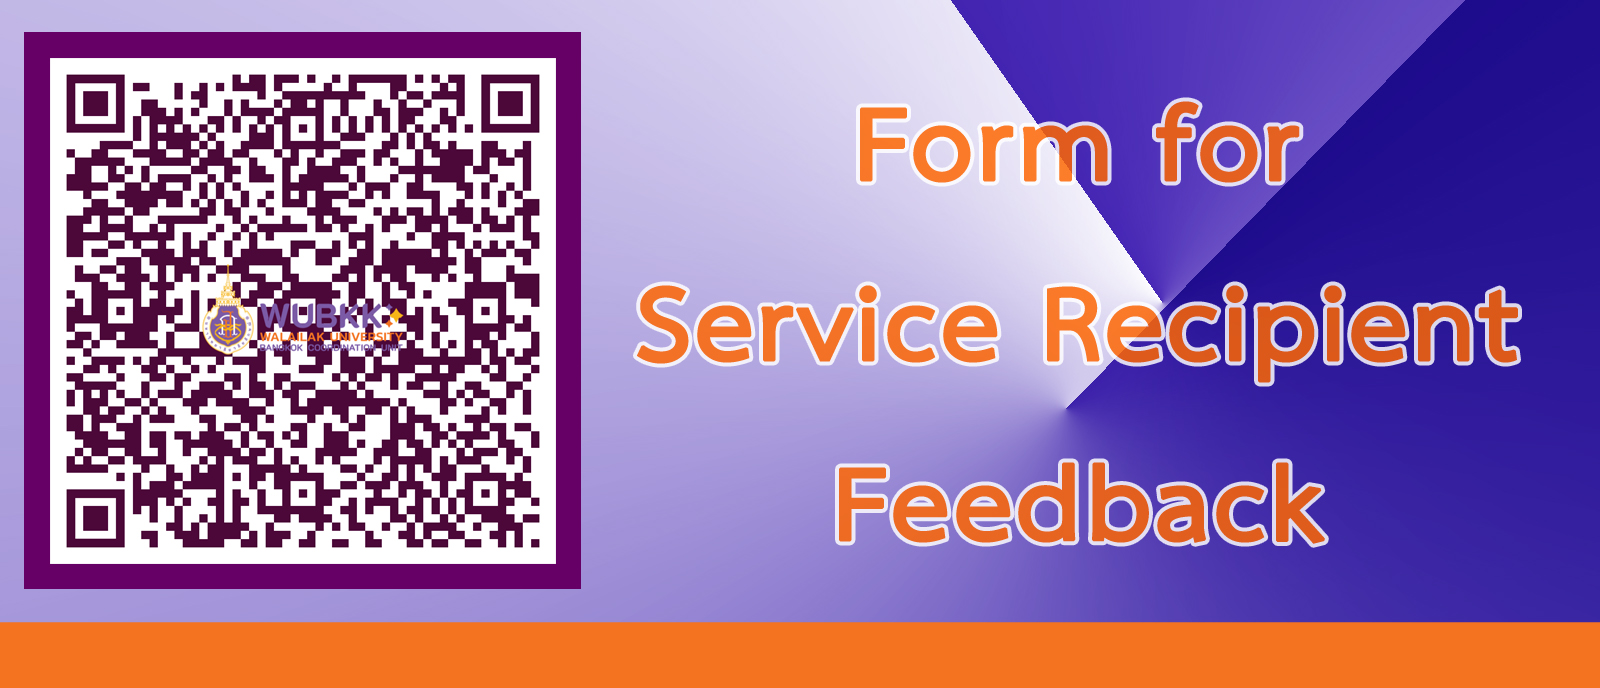 Form for Service Recipient Feedback